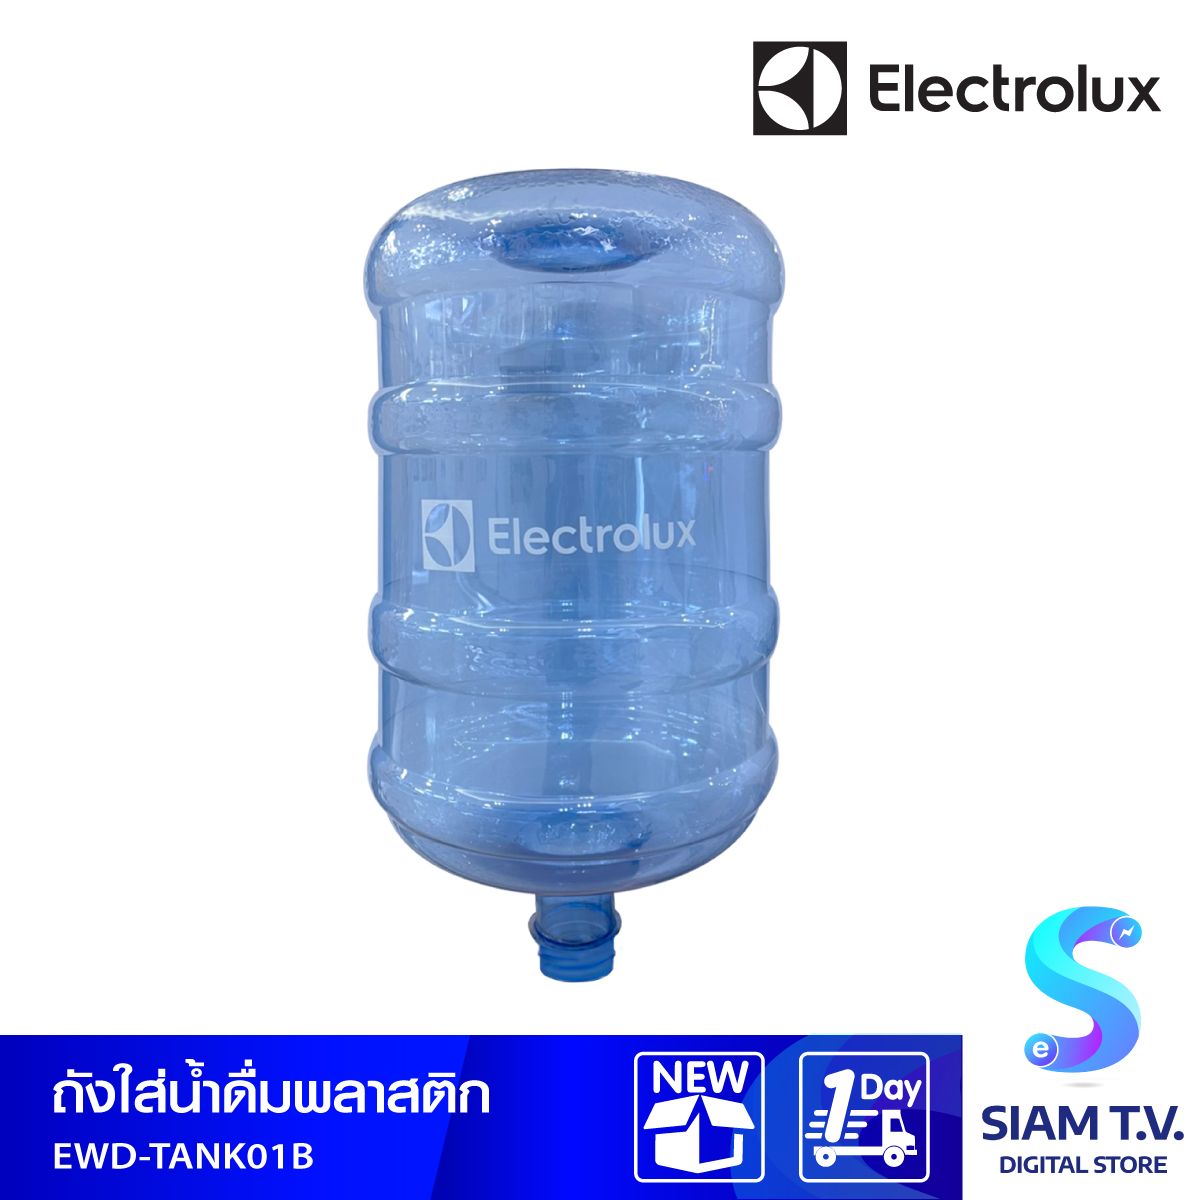 ถังน้ำดื่มทรงกลม ELECTROLUX  รุ่น EWD-TANK01B  ขนาด 18.9 ลิตร สีใส